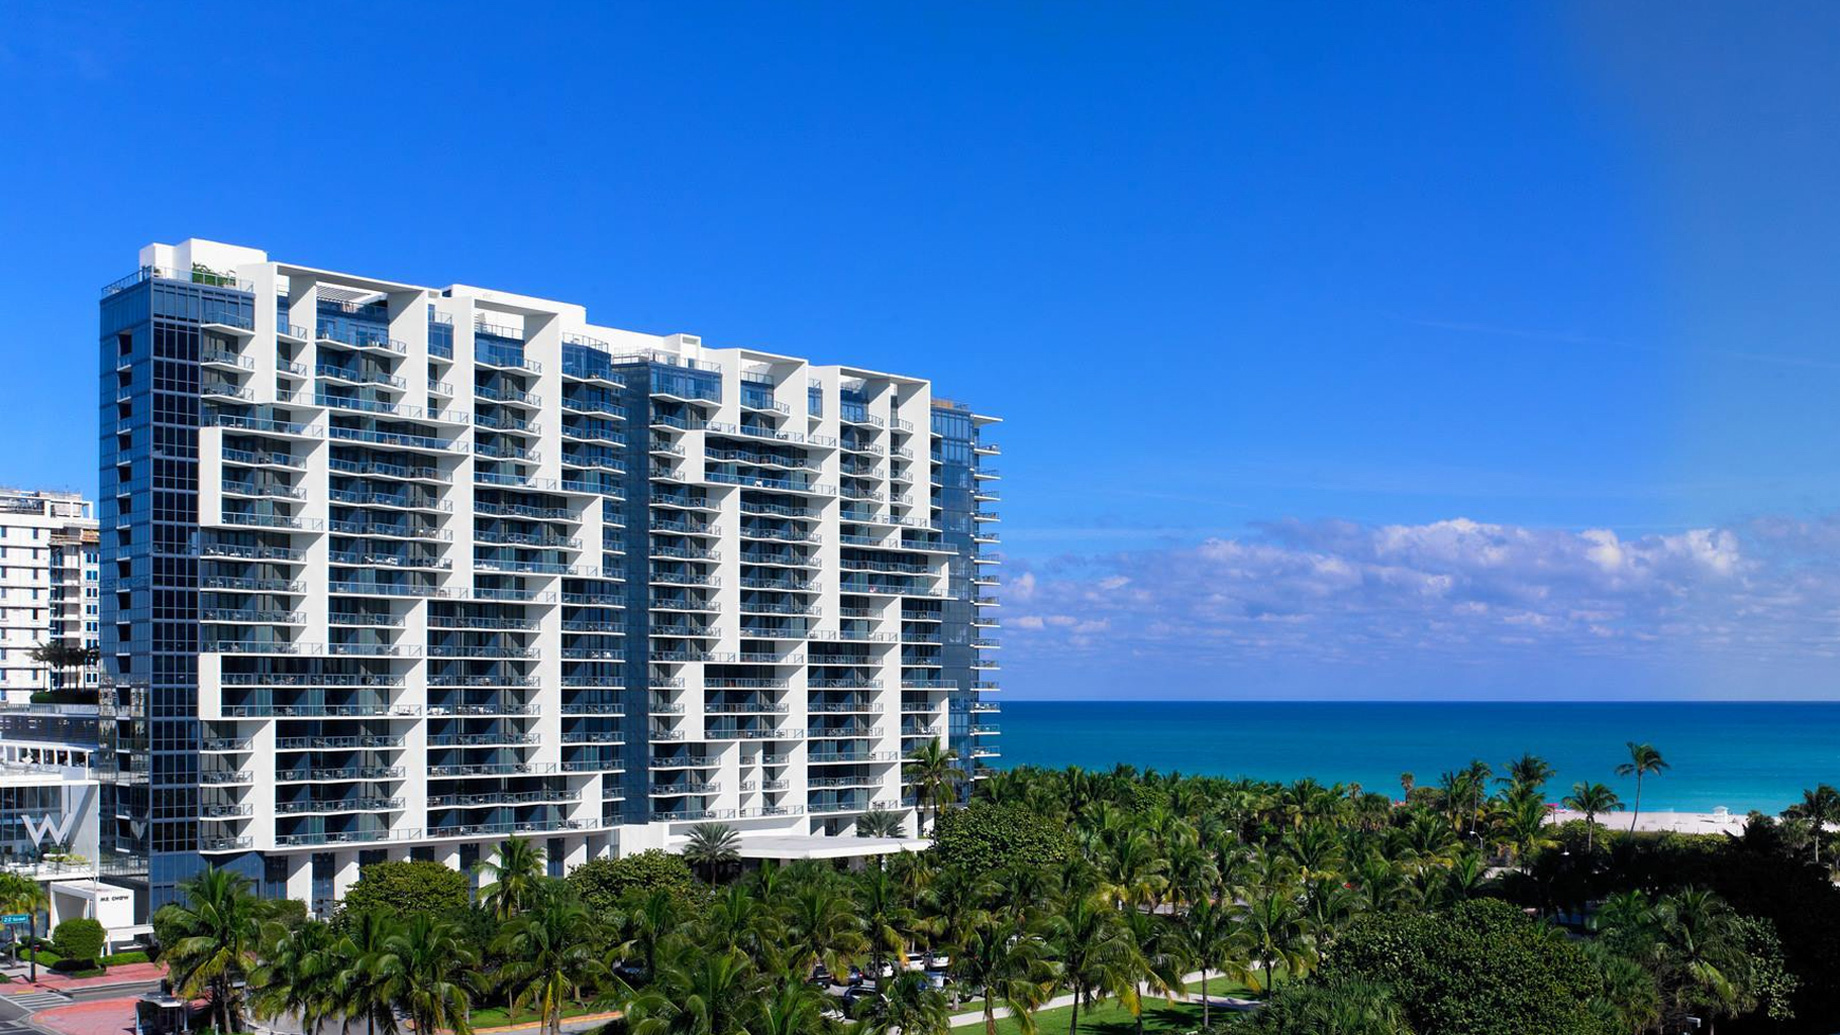 W South Beach Luxury Hotel - Miami Beach, FL, USA - W South Beach Exterior Ocean View